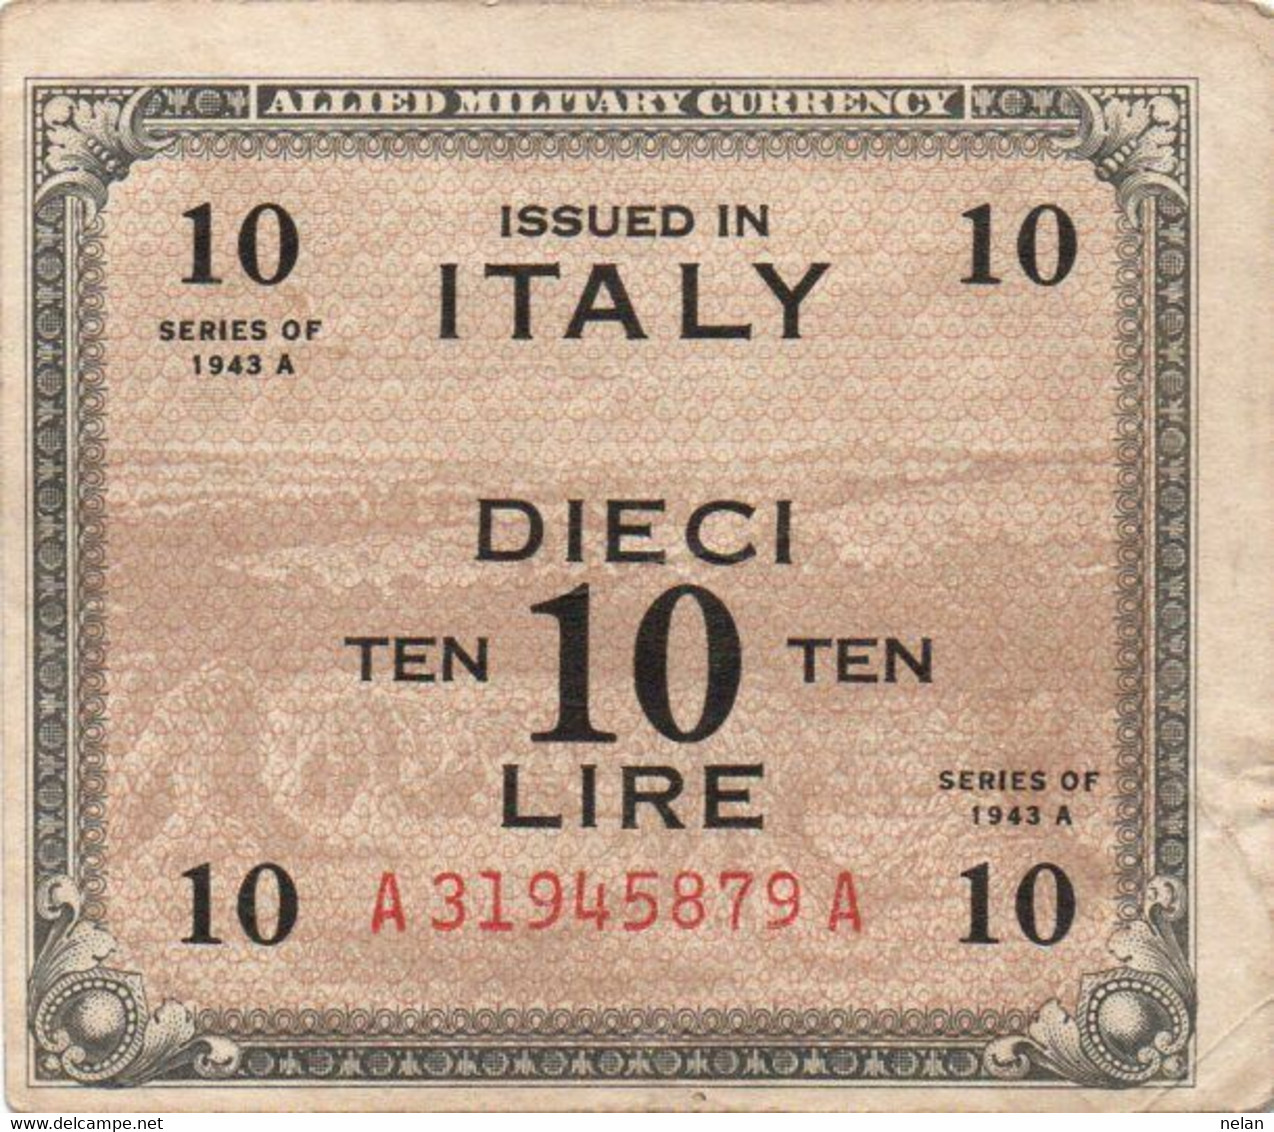 ITALIA 10 LIRE -1943 P- M13 - BILINGVE - Occupation Alliés Seconde Guerre Mondiale